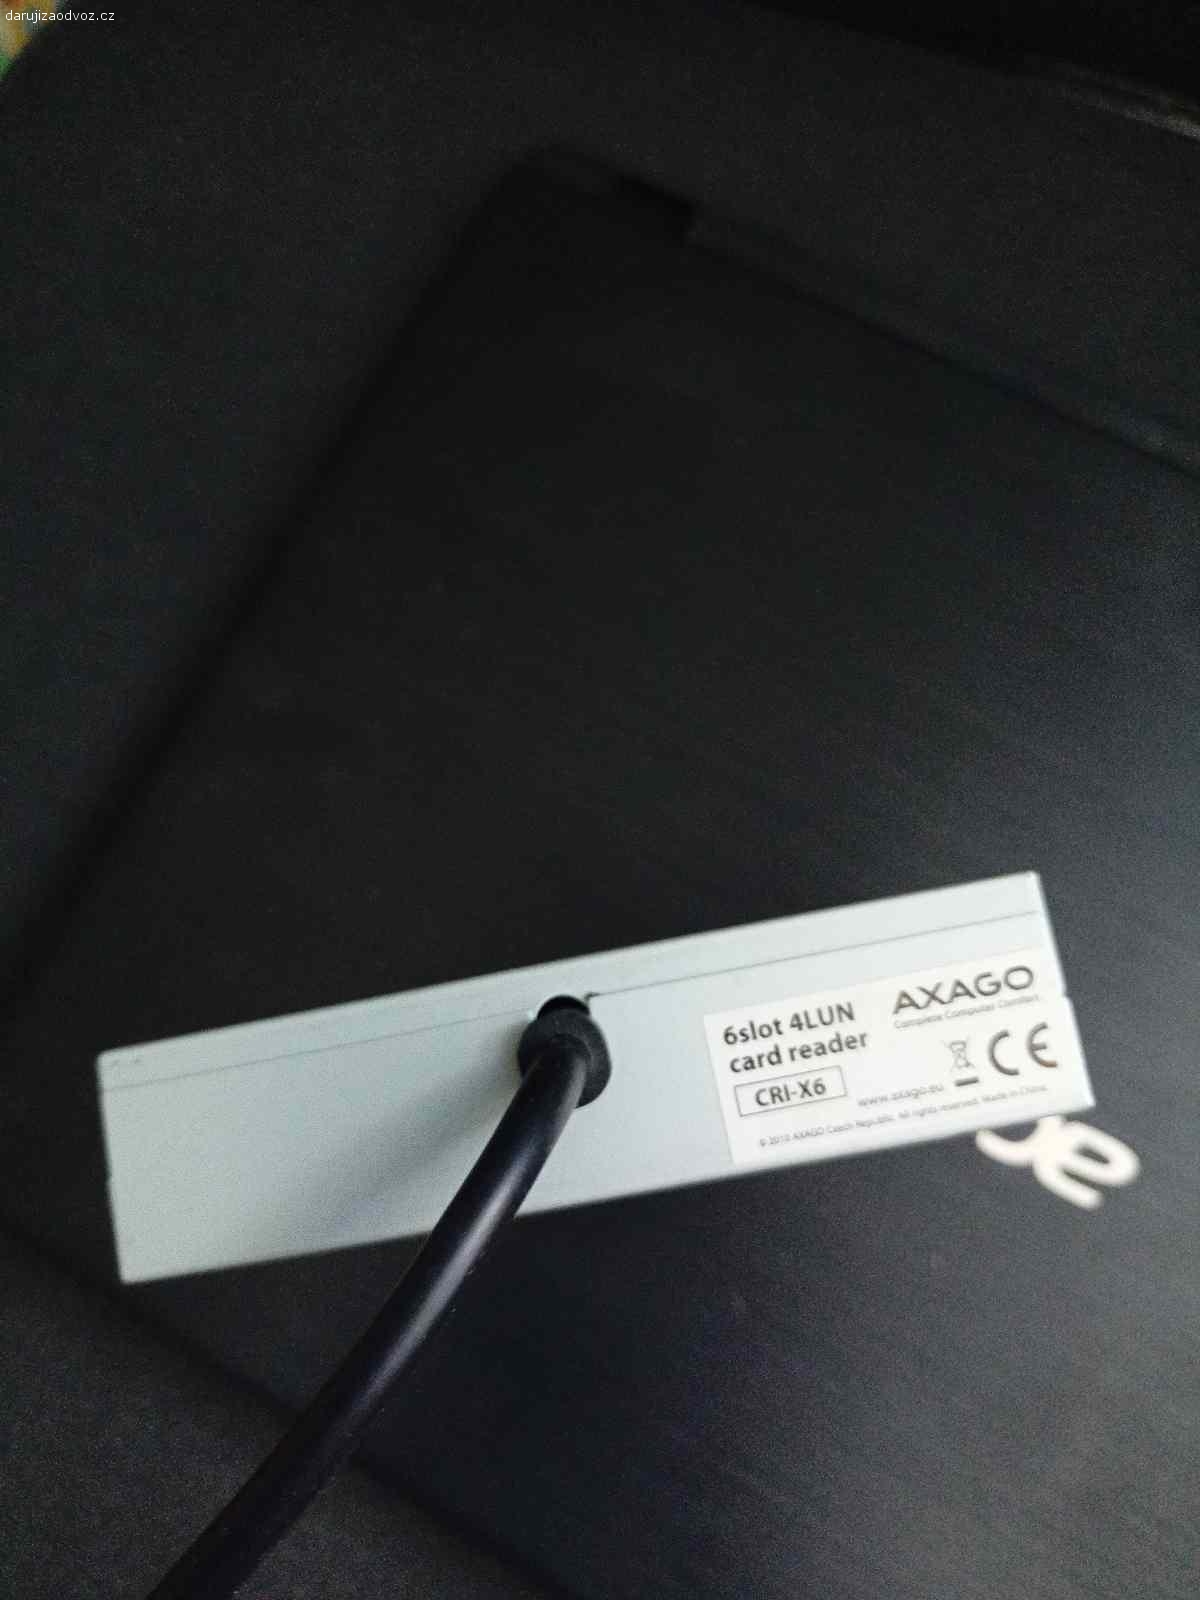 Axago - interní USB čtečka karet. Daruji interní čtečku Axago. Vše až na USB port funkční. Vyměnil jsem za jinou čtečku která ladí se skříní. Pouze osobní předání